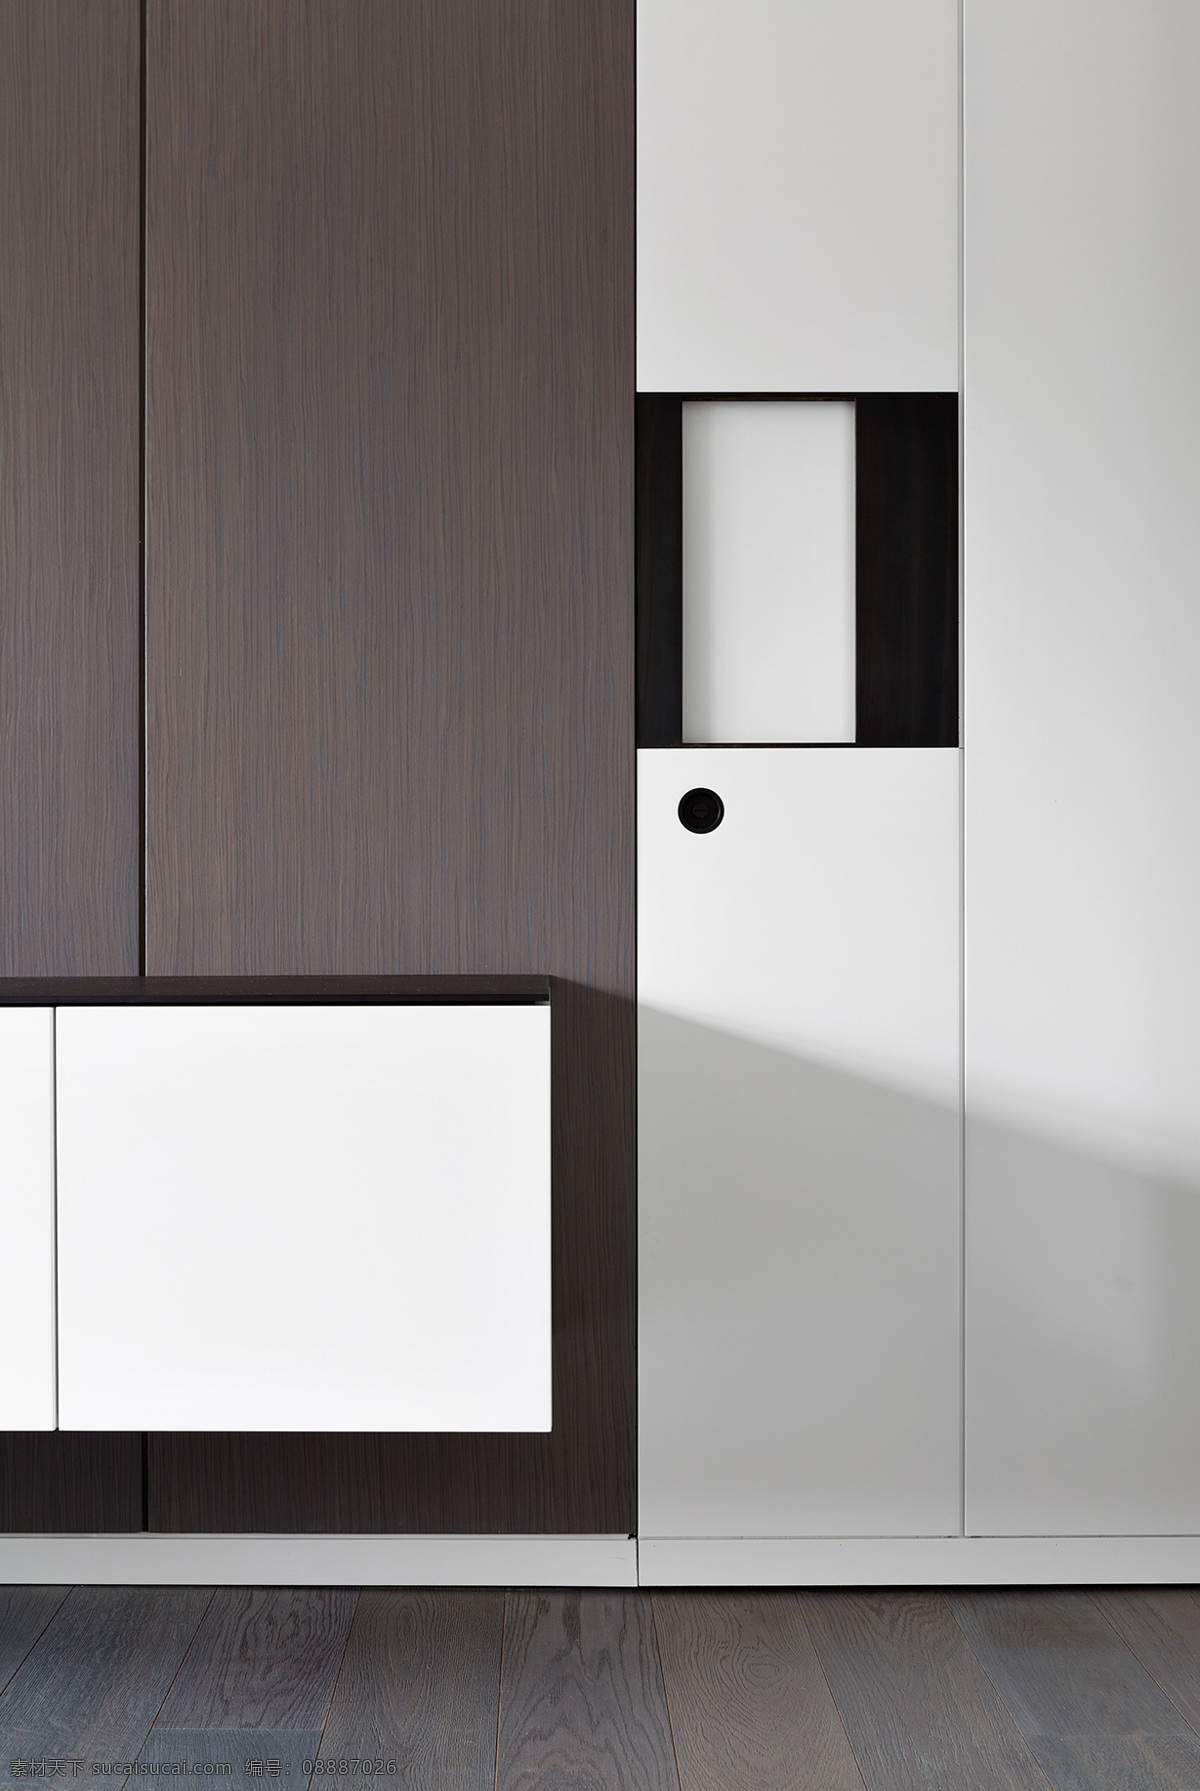 简约 现代 玄关 装修 效果图 白色 储物柜 灰色 简约风格 木质地板 室内设计 玄关设计